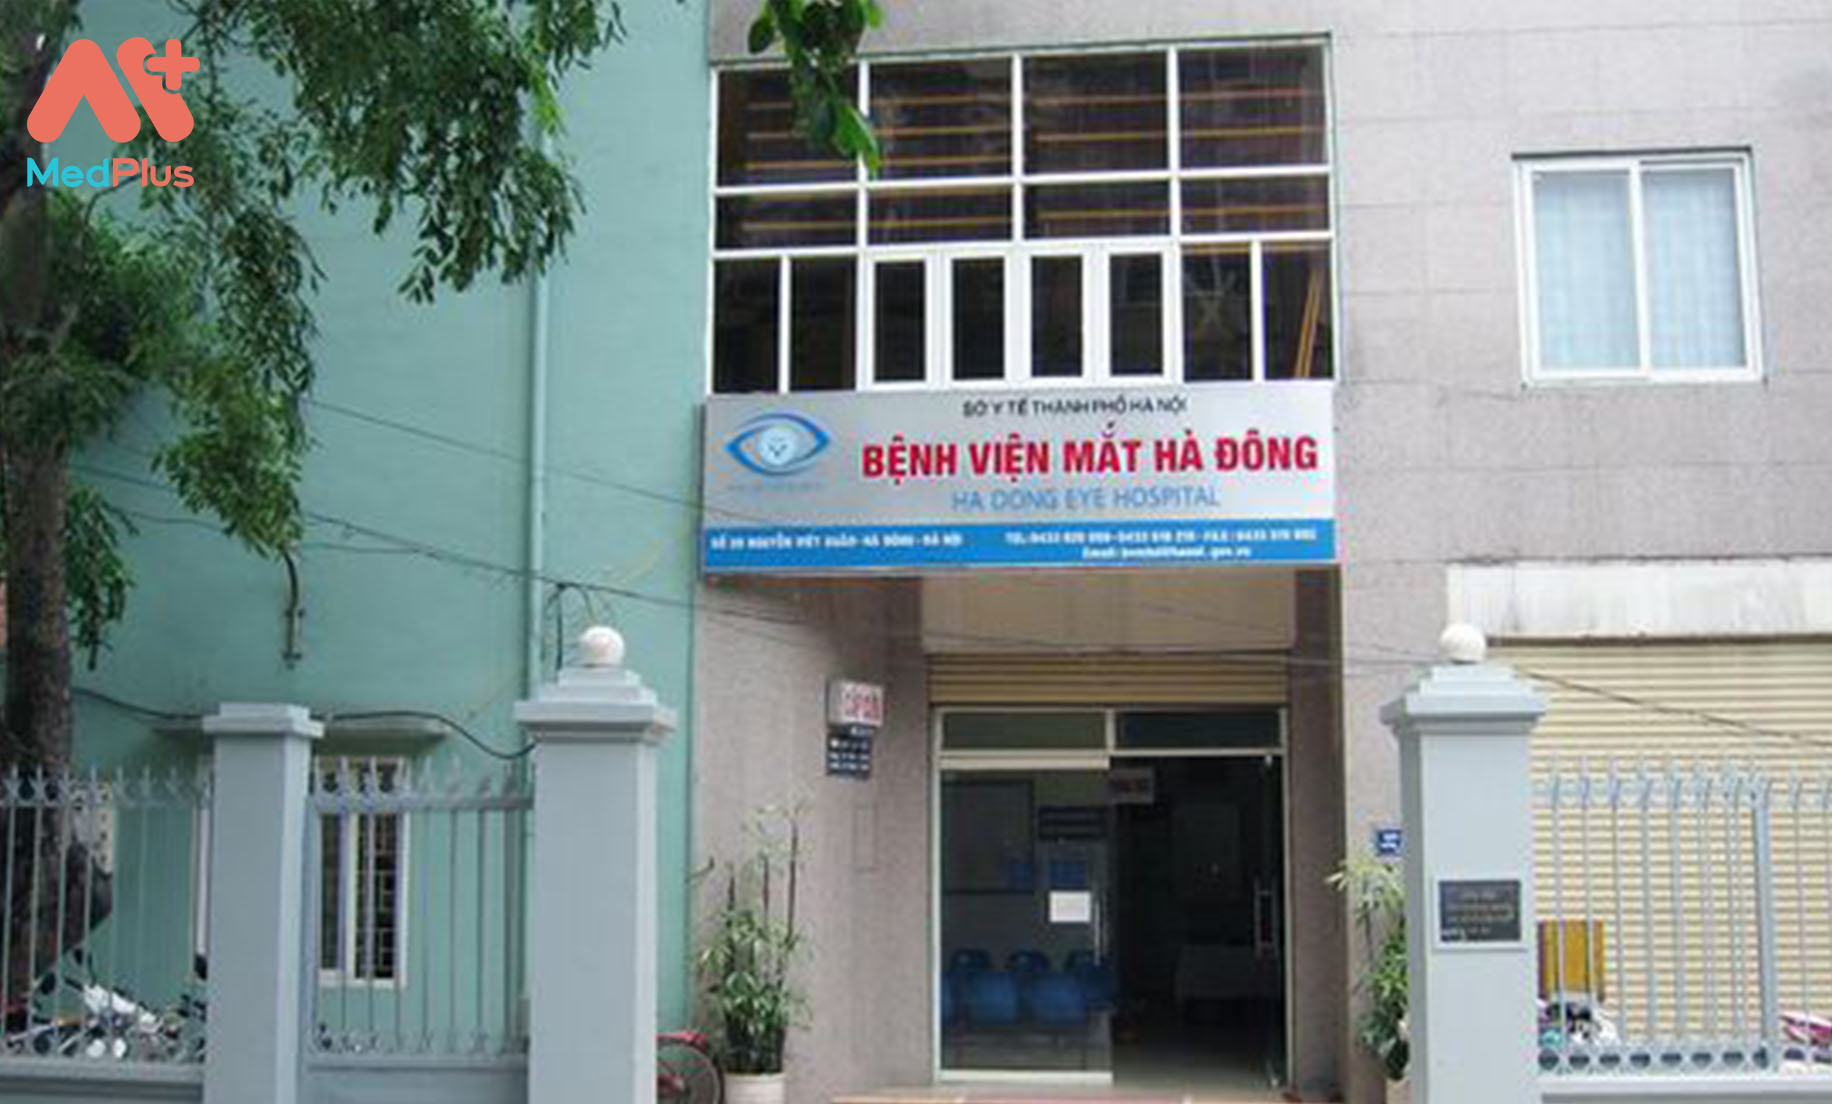 Bệnh viện Mắt Hà Đông: HƯỚNG DẪN THĂM KHÁM